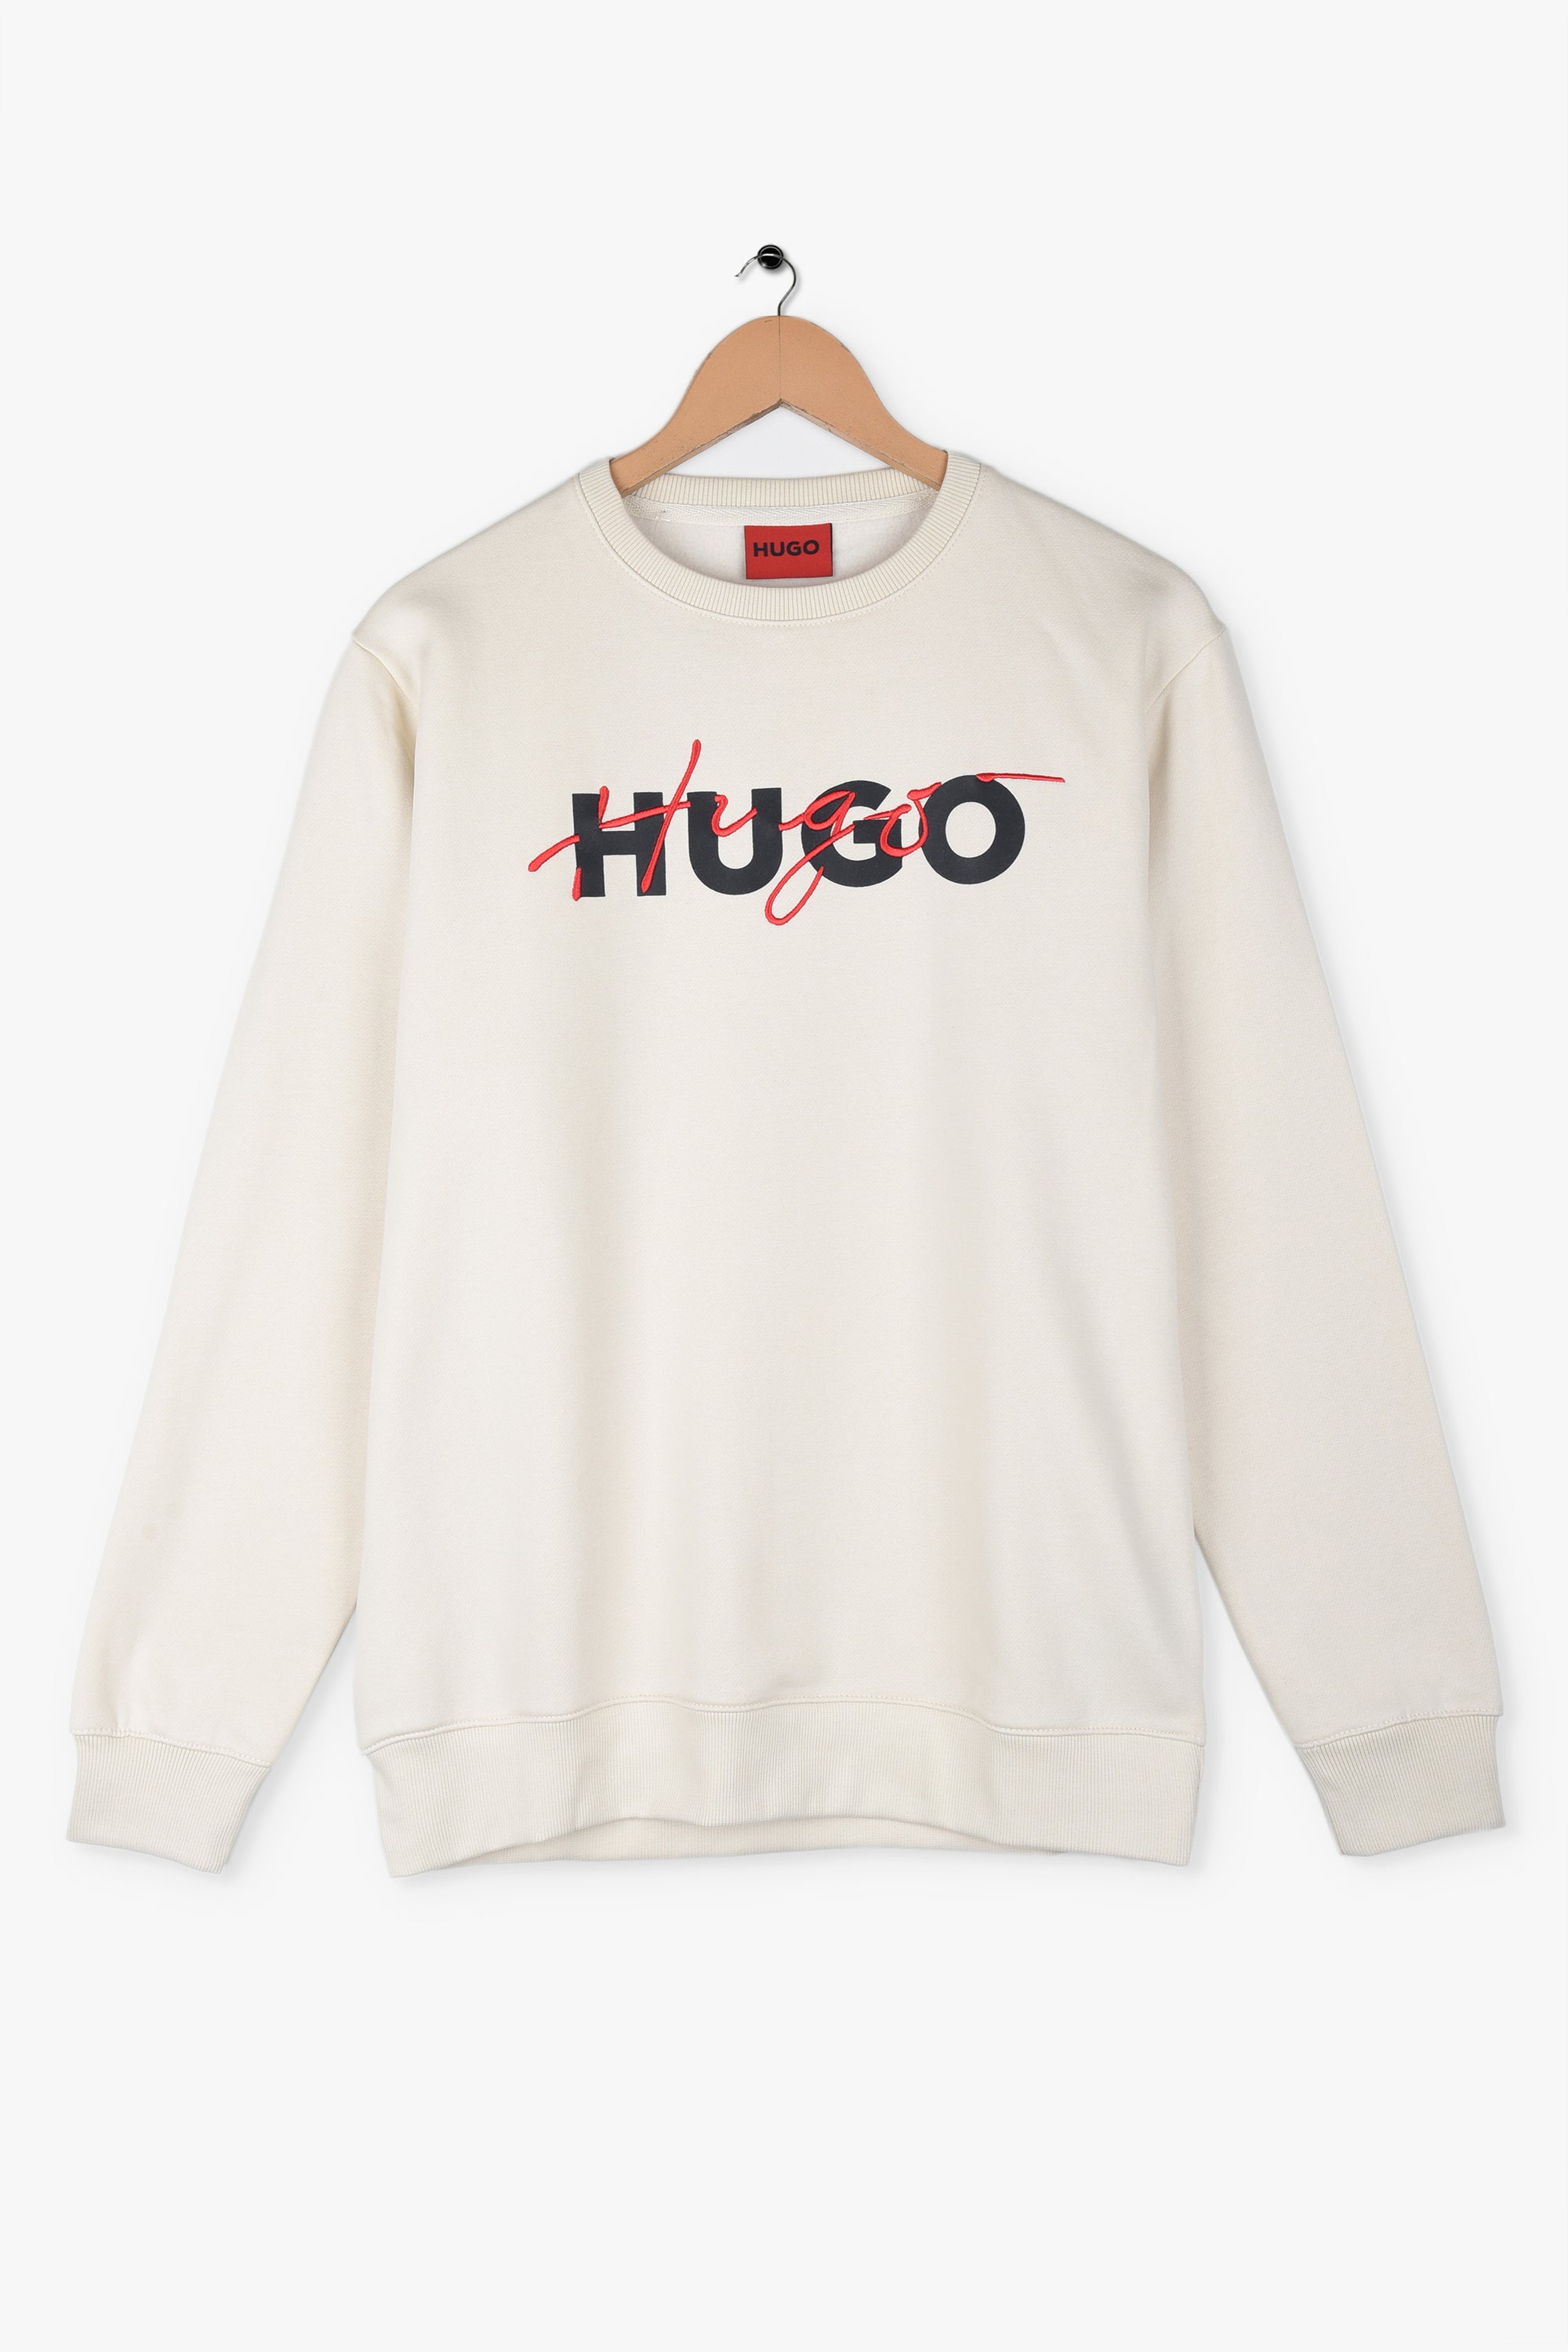 HUGO BOSS HYBRID LOGO FLEECE Sweatshirt